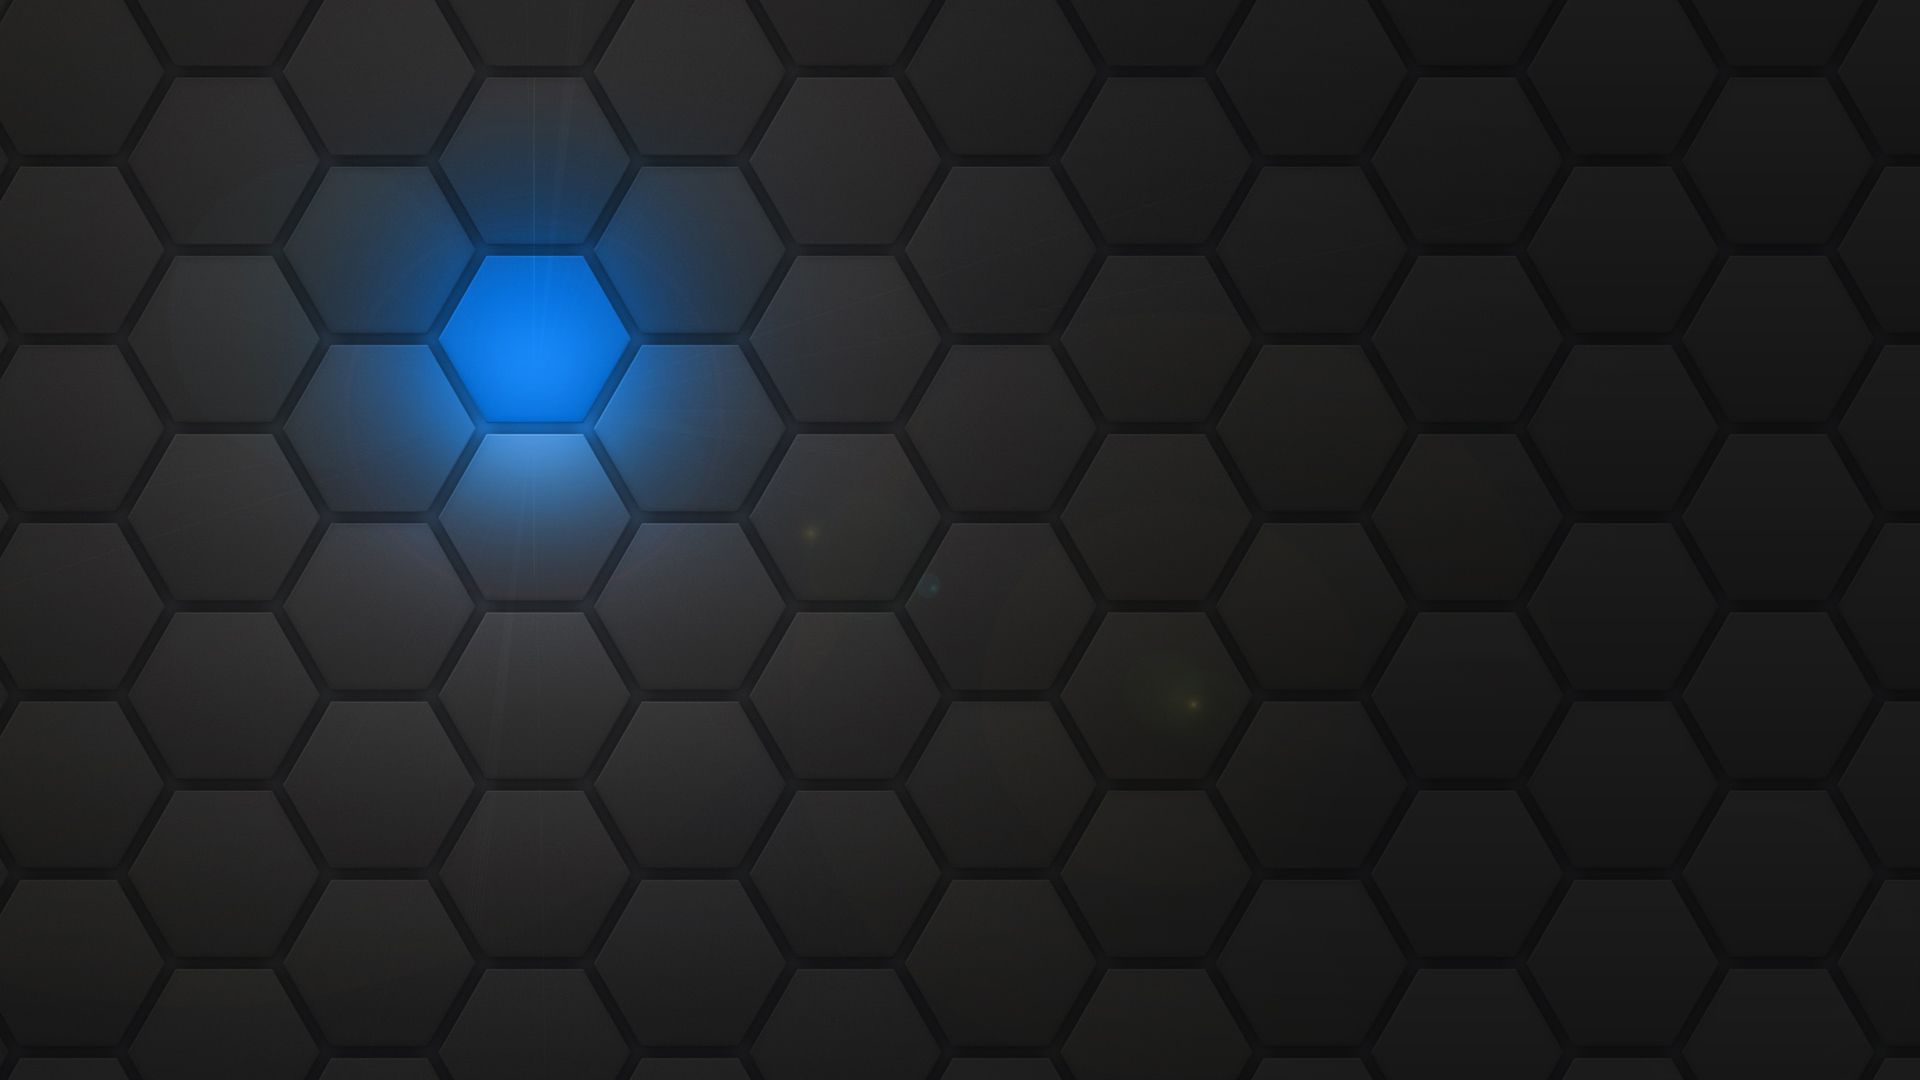 hexagon wallpaper,blue,black,pattern,light,text